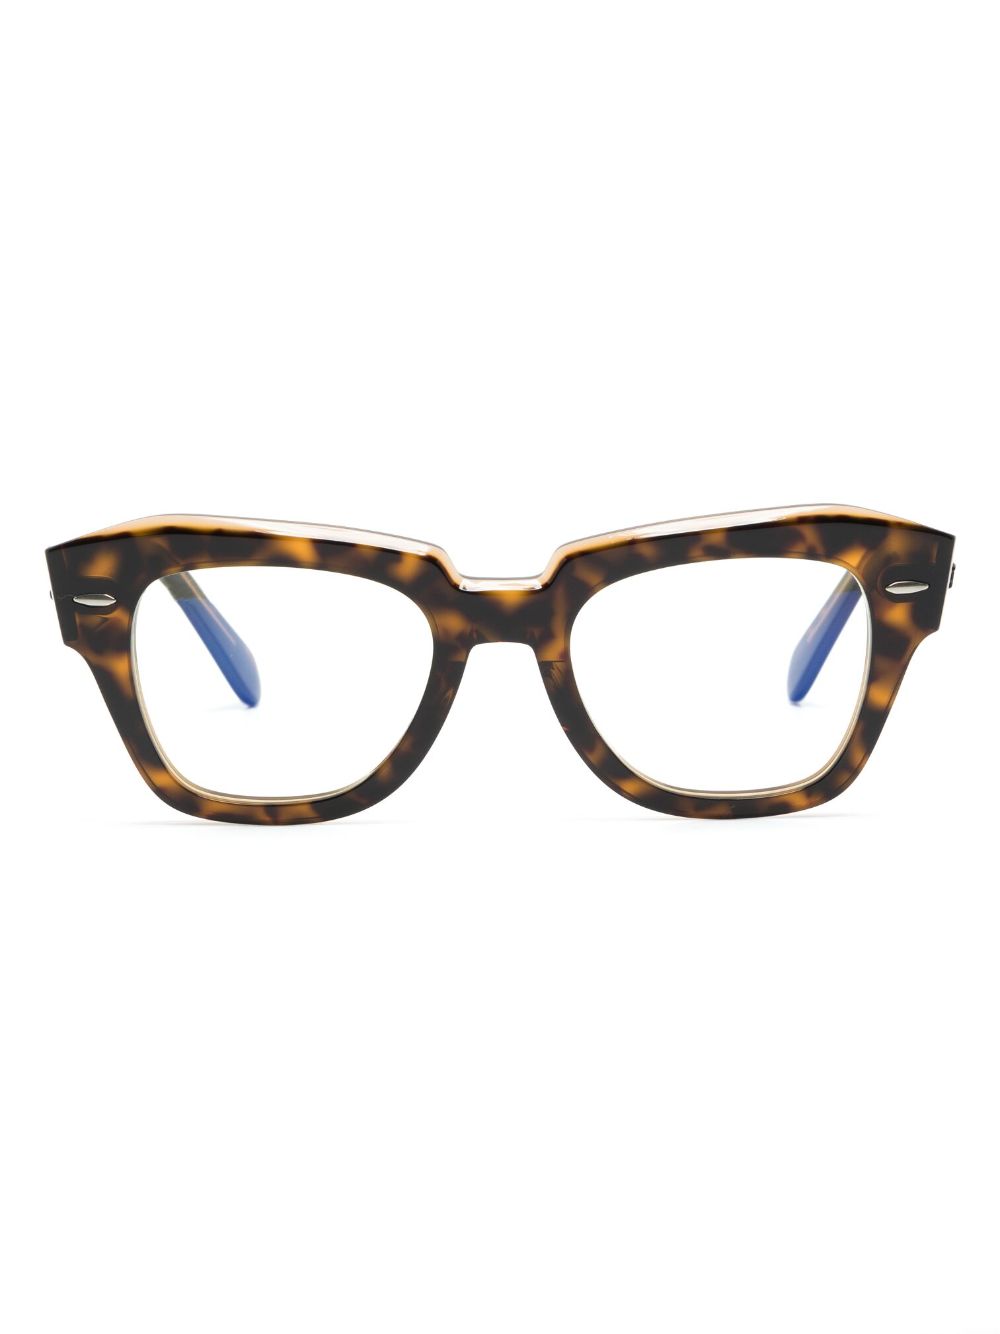 Ray Ban Tortoiseshell-effect Cat-eye Frame Glasses In Brown